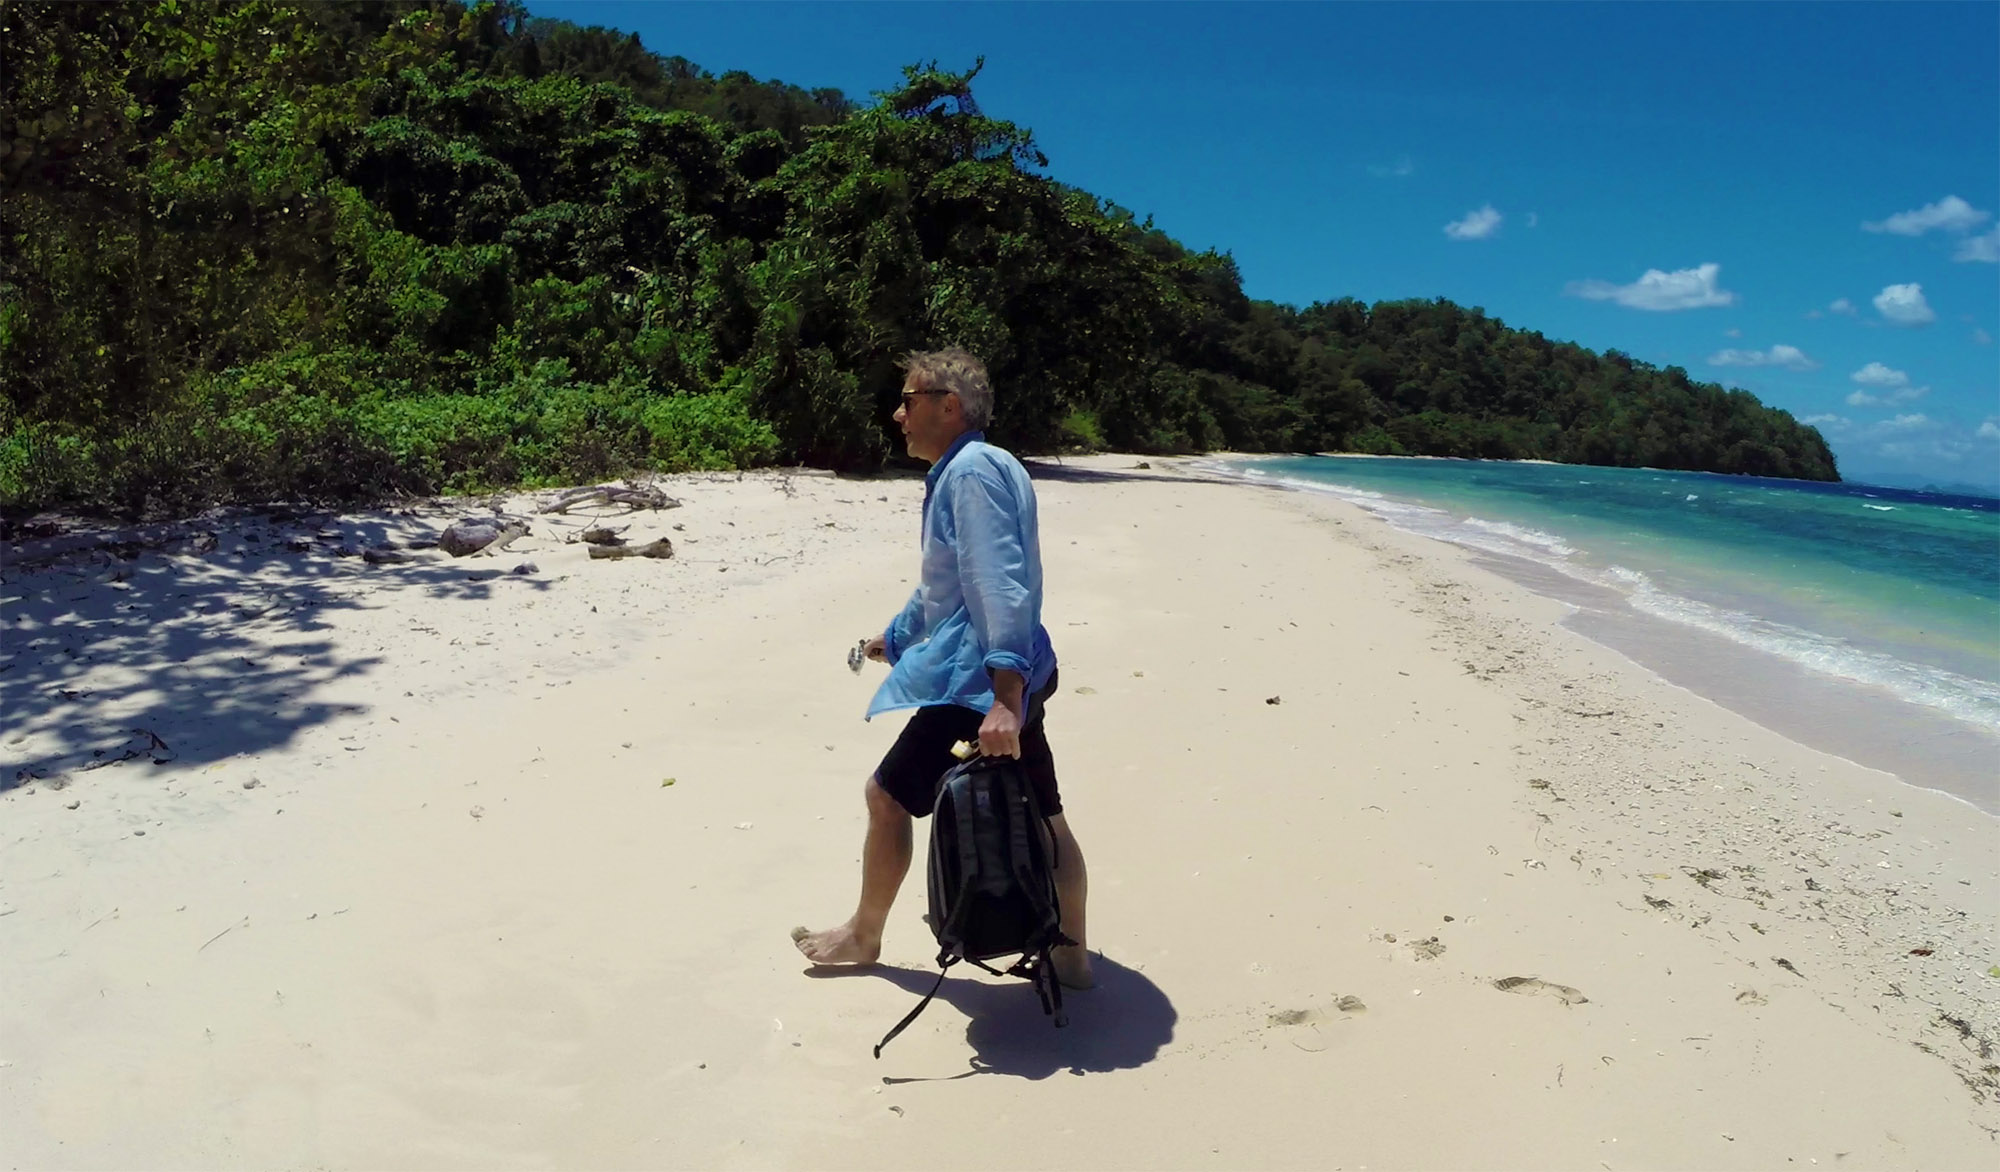 Crusoé da vida real: conheça o homem que viveu 4 anos em uma ilha deserta -  Mega Curioso